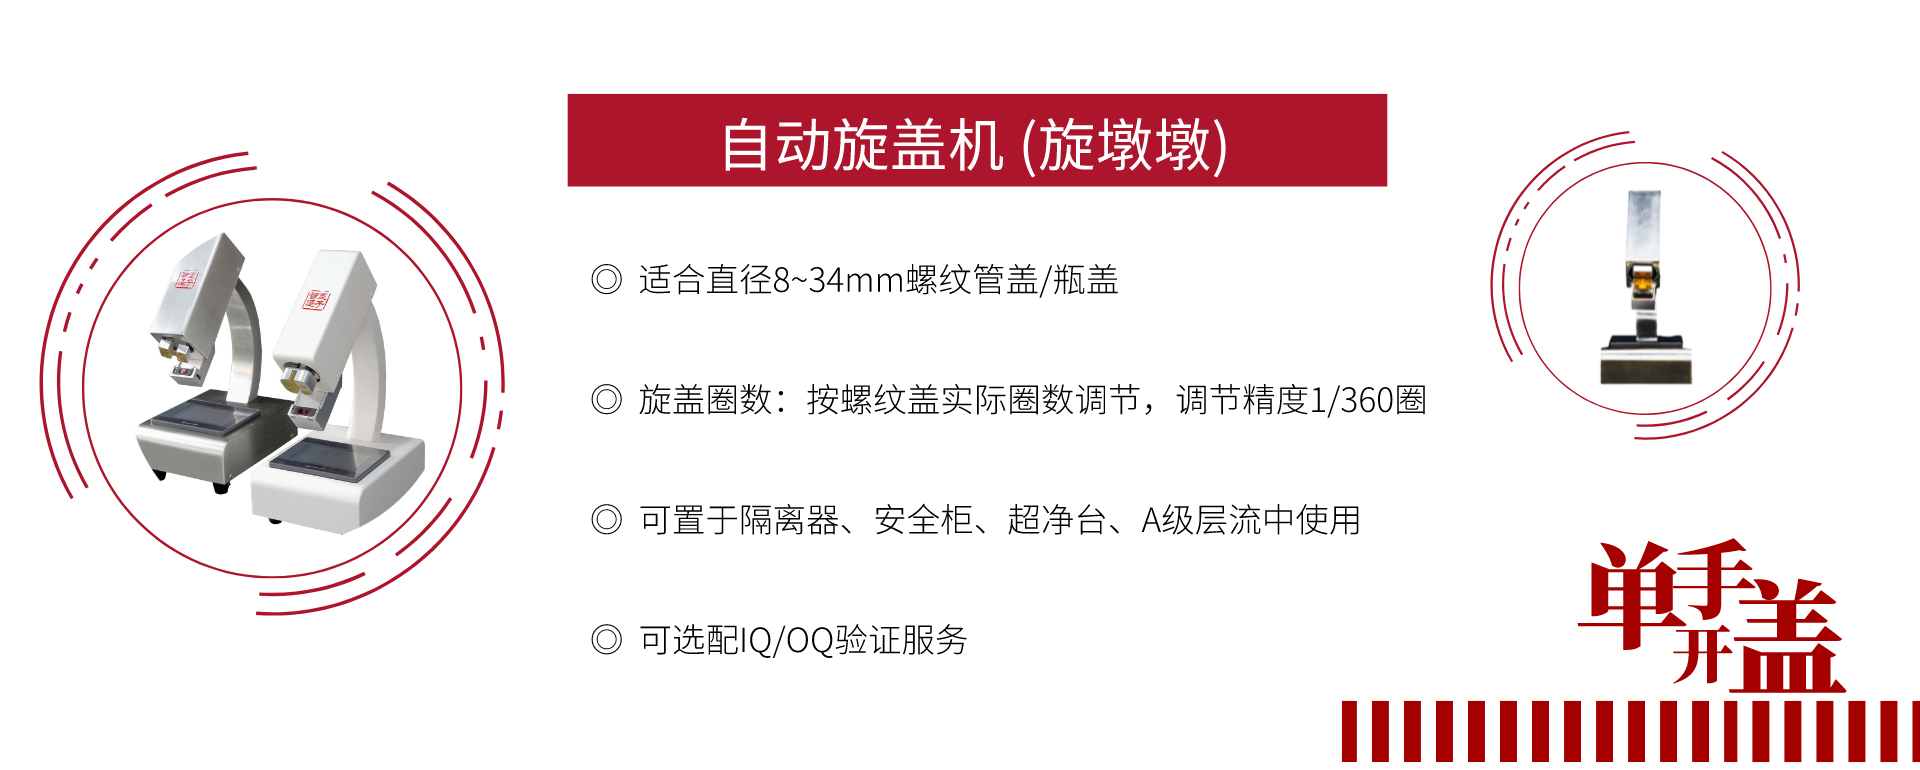 关于当前产品4118云鼎集团·(中国)官方网站的成功案例等相关图片